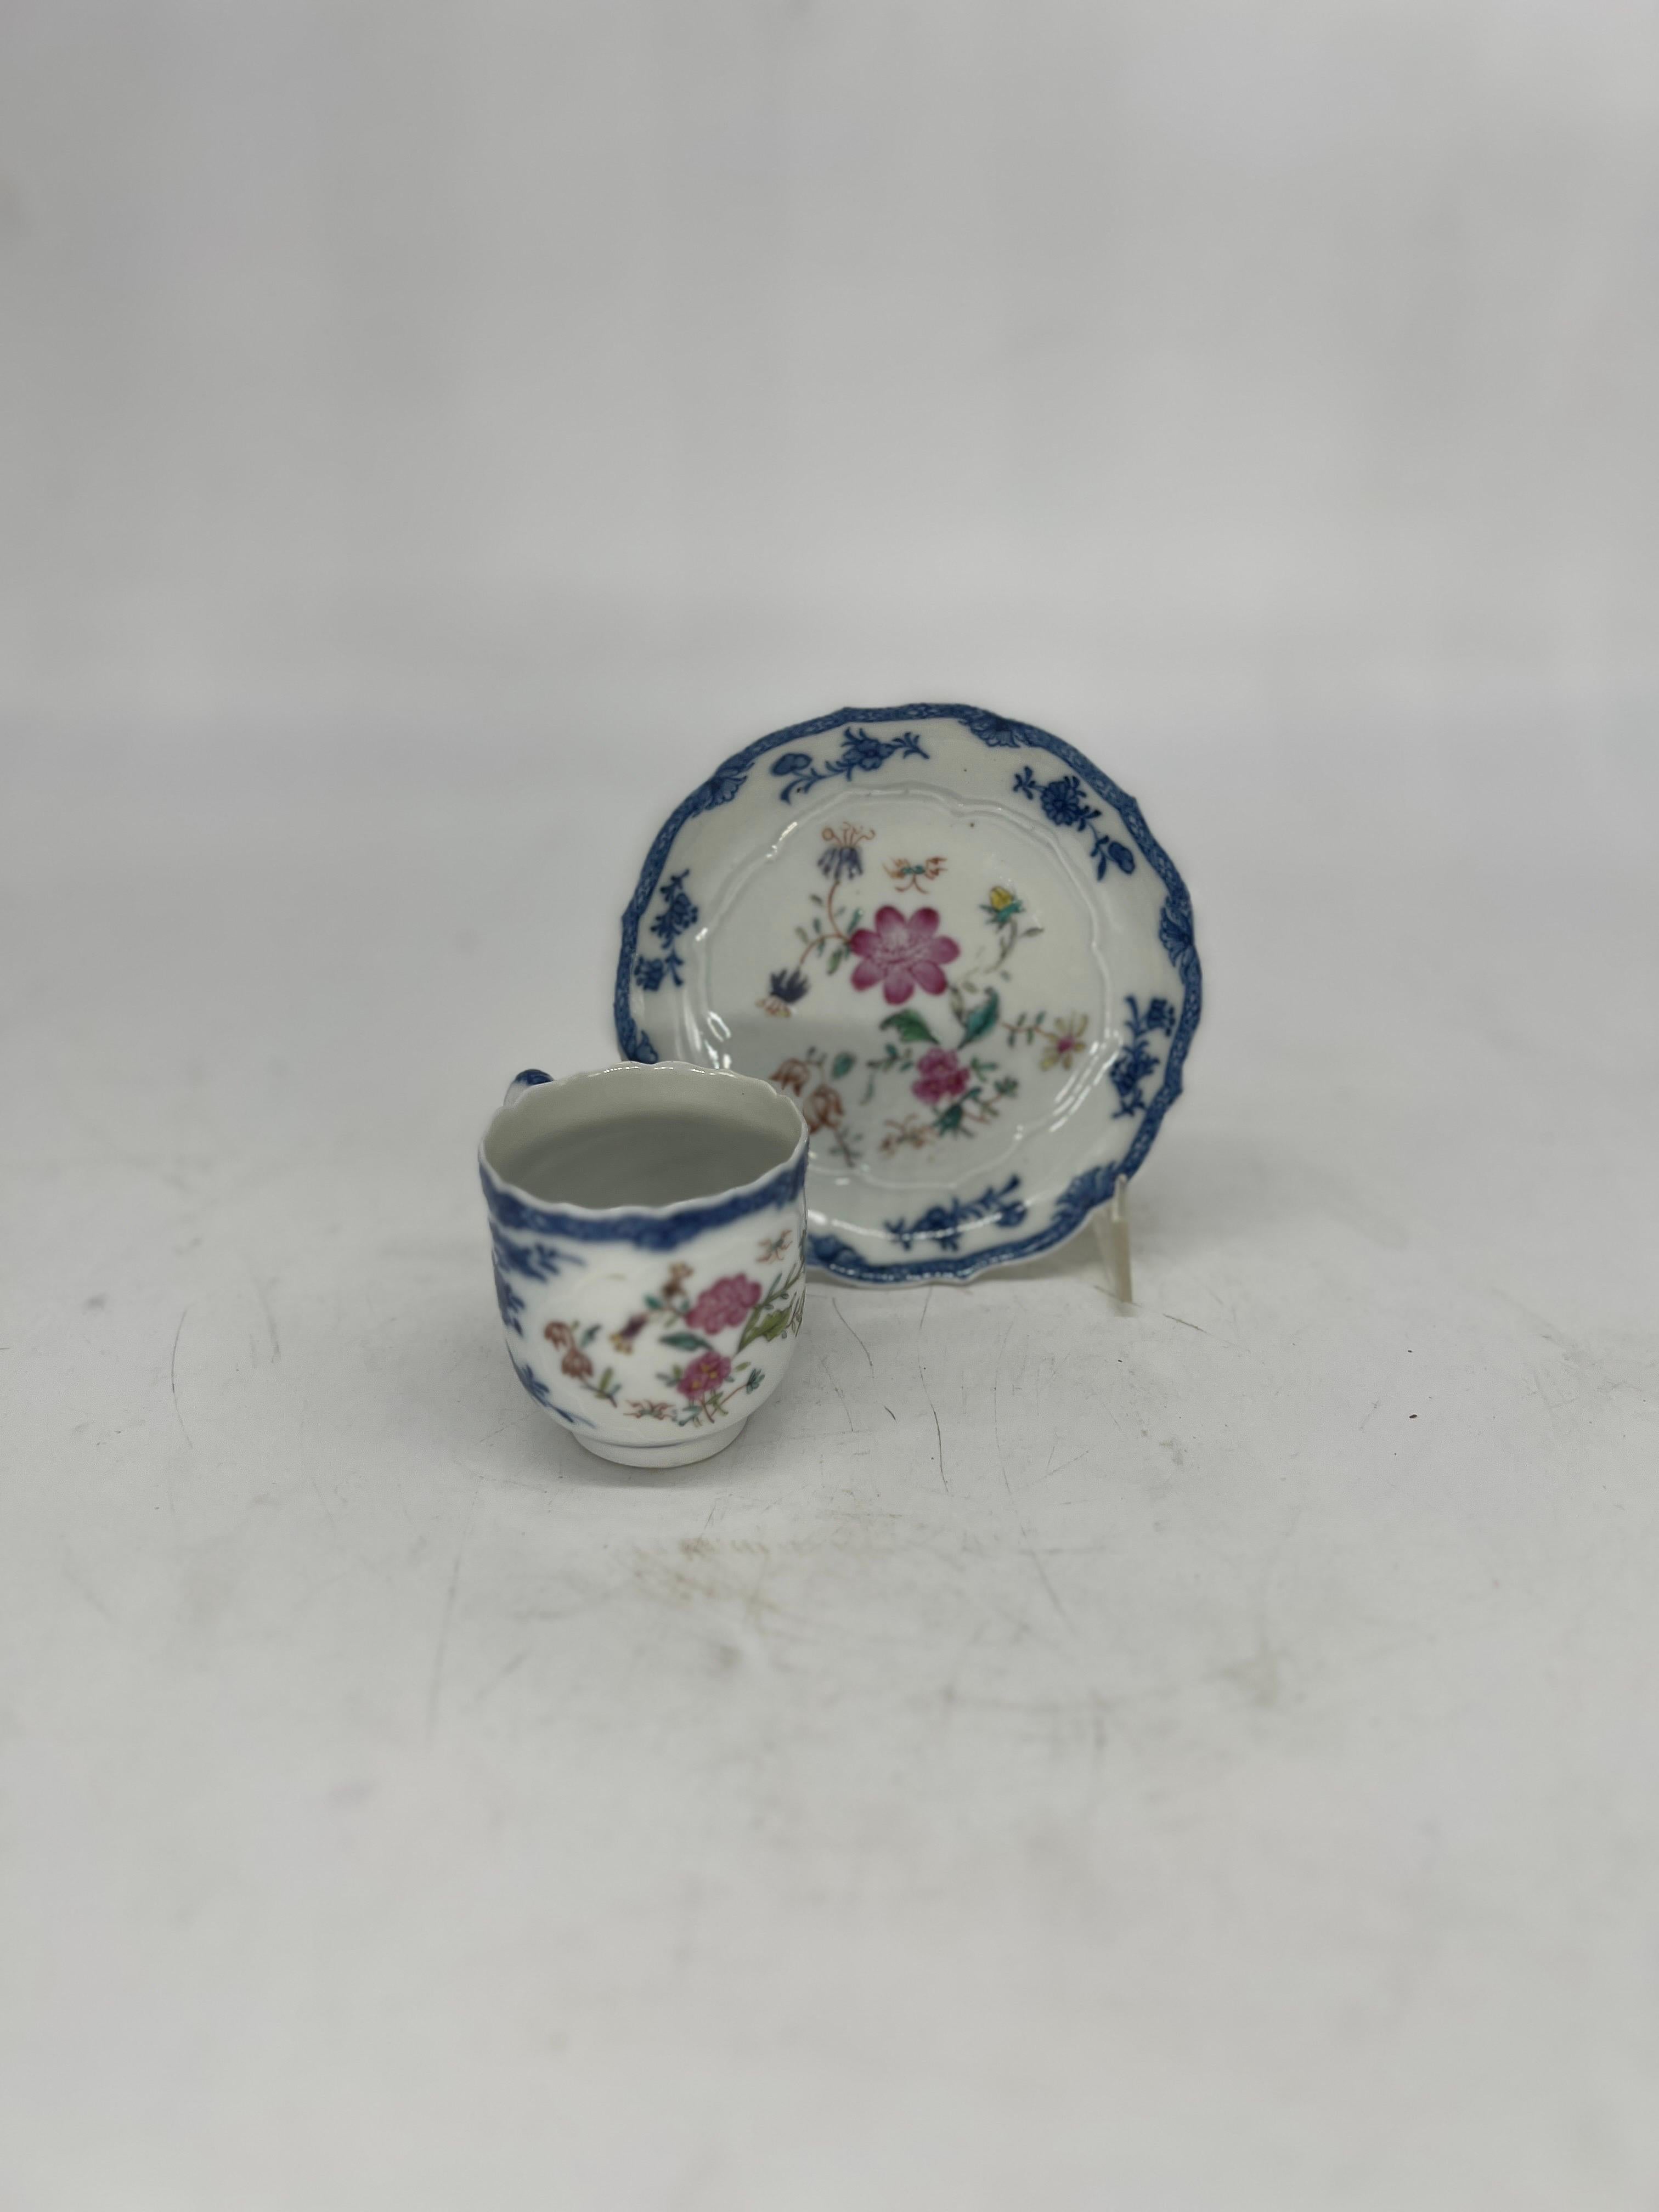 Chinois, vers 1785.

Service de tasses et soucoupes en porcelaine d'exportation chinoise, orné de motifs feuillagés en bleu et blanc sous glaçure et de motifs géométriques sur les bords. La face principale de la tasse et de la soucoupe est ornée de